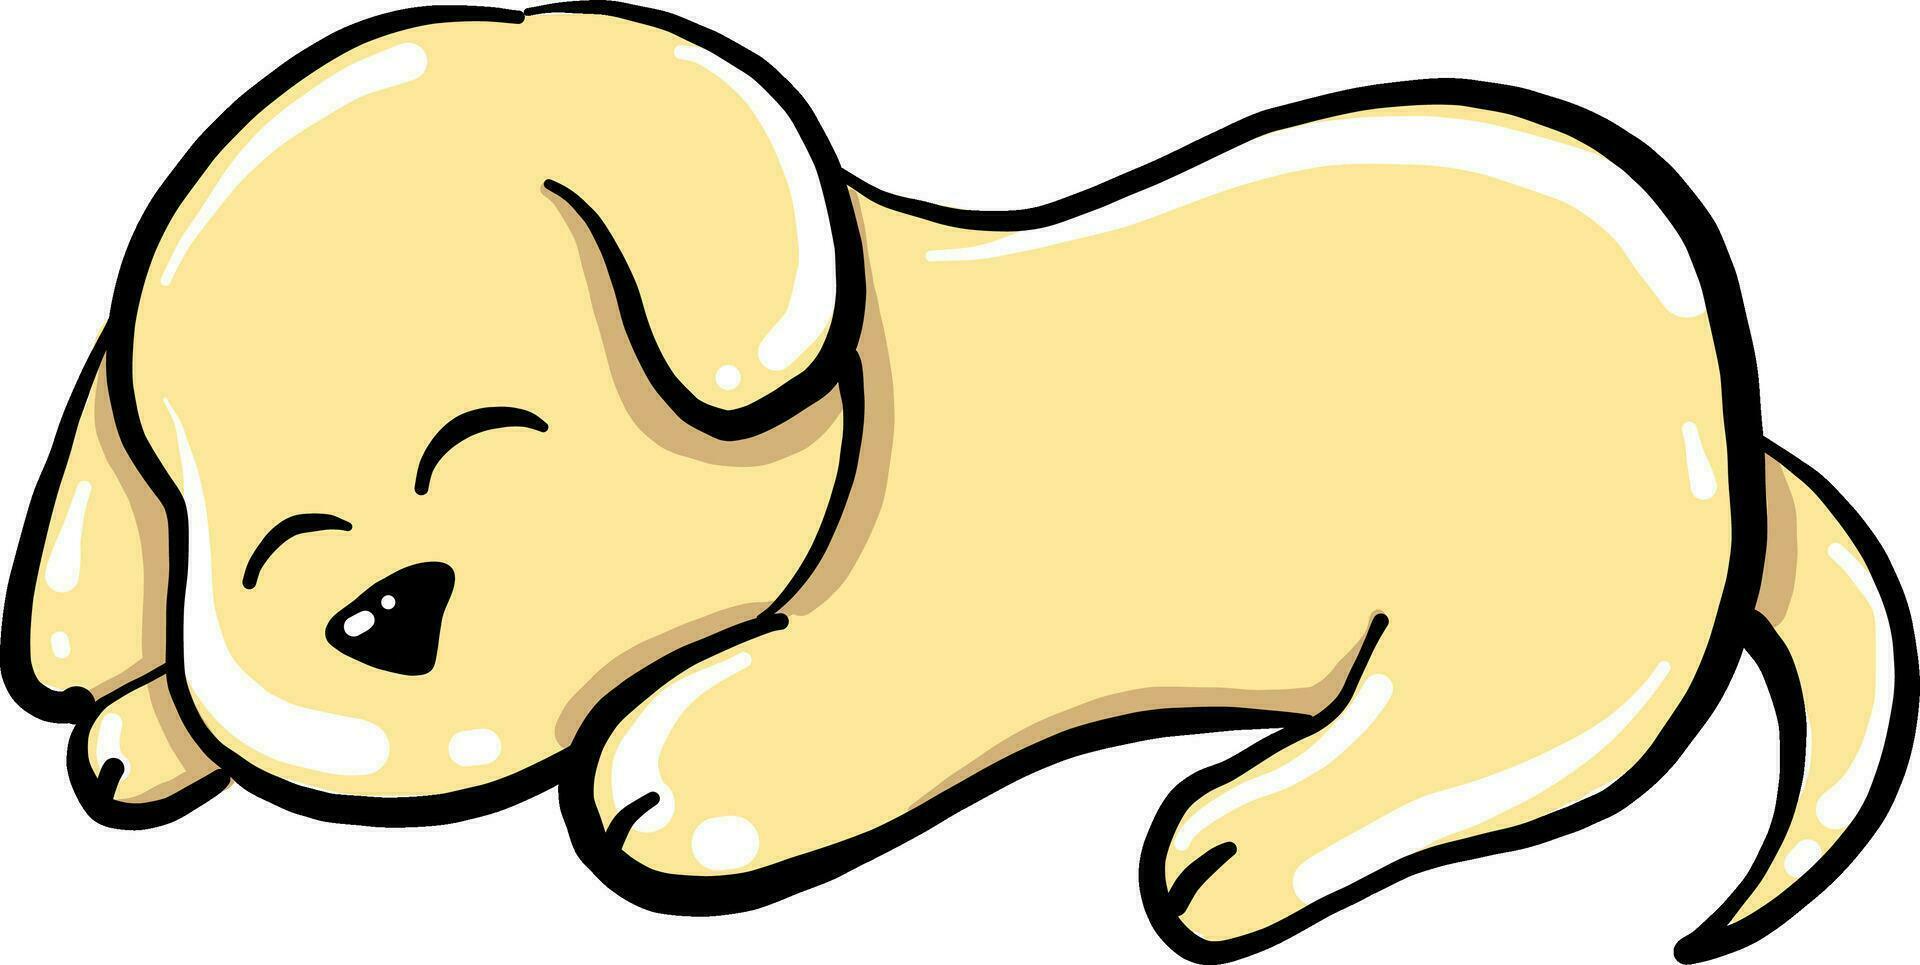 Sleeping dog, illustration, vector on white background